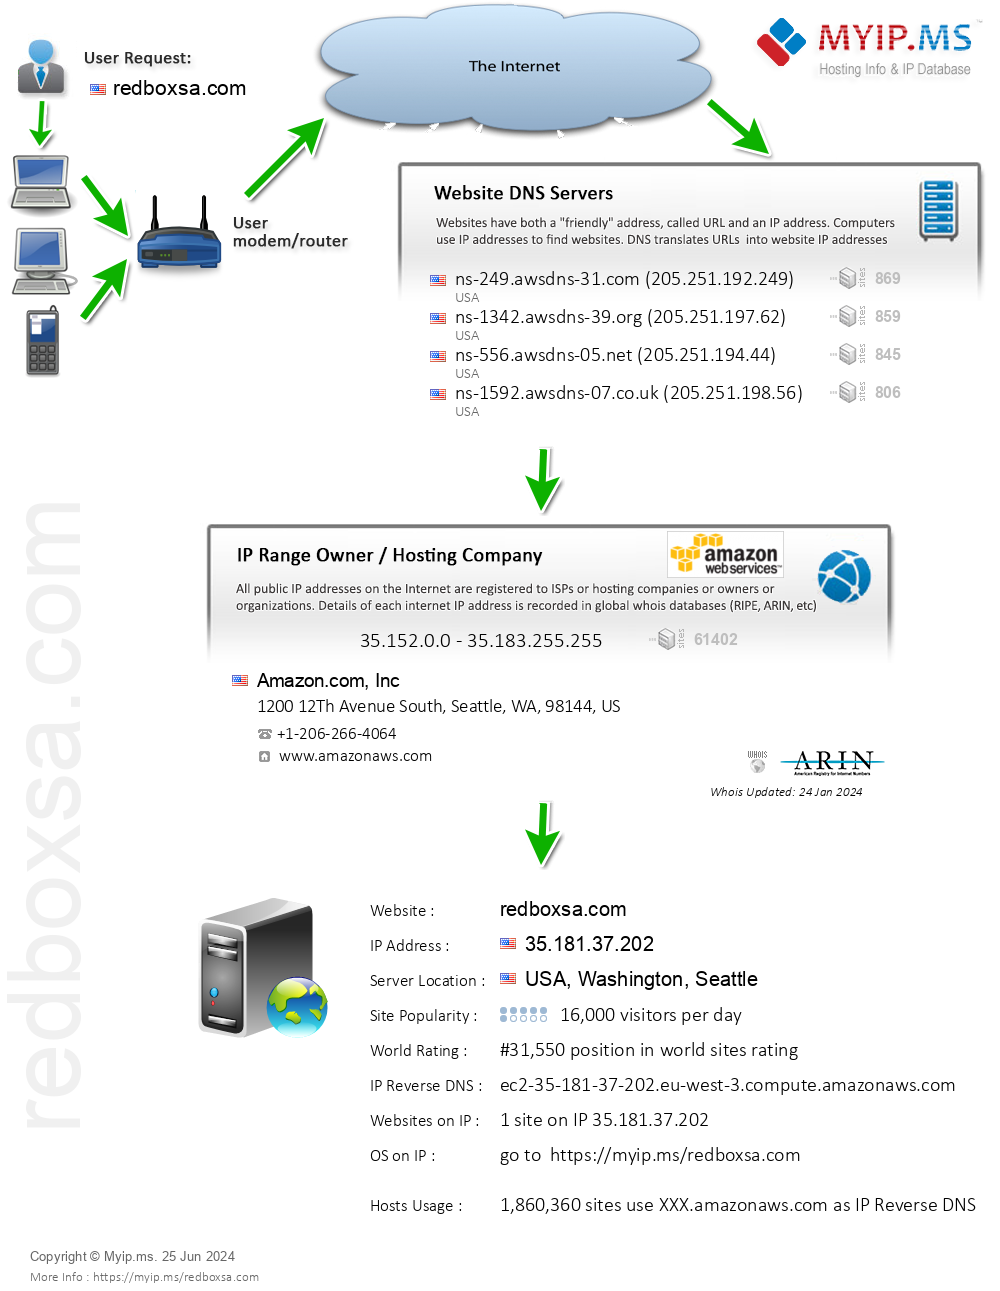 Redboxsa.com - Website Hosting Visual IP Diagram